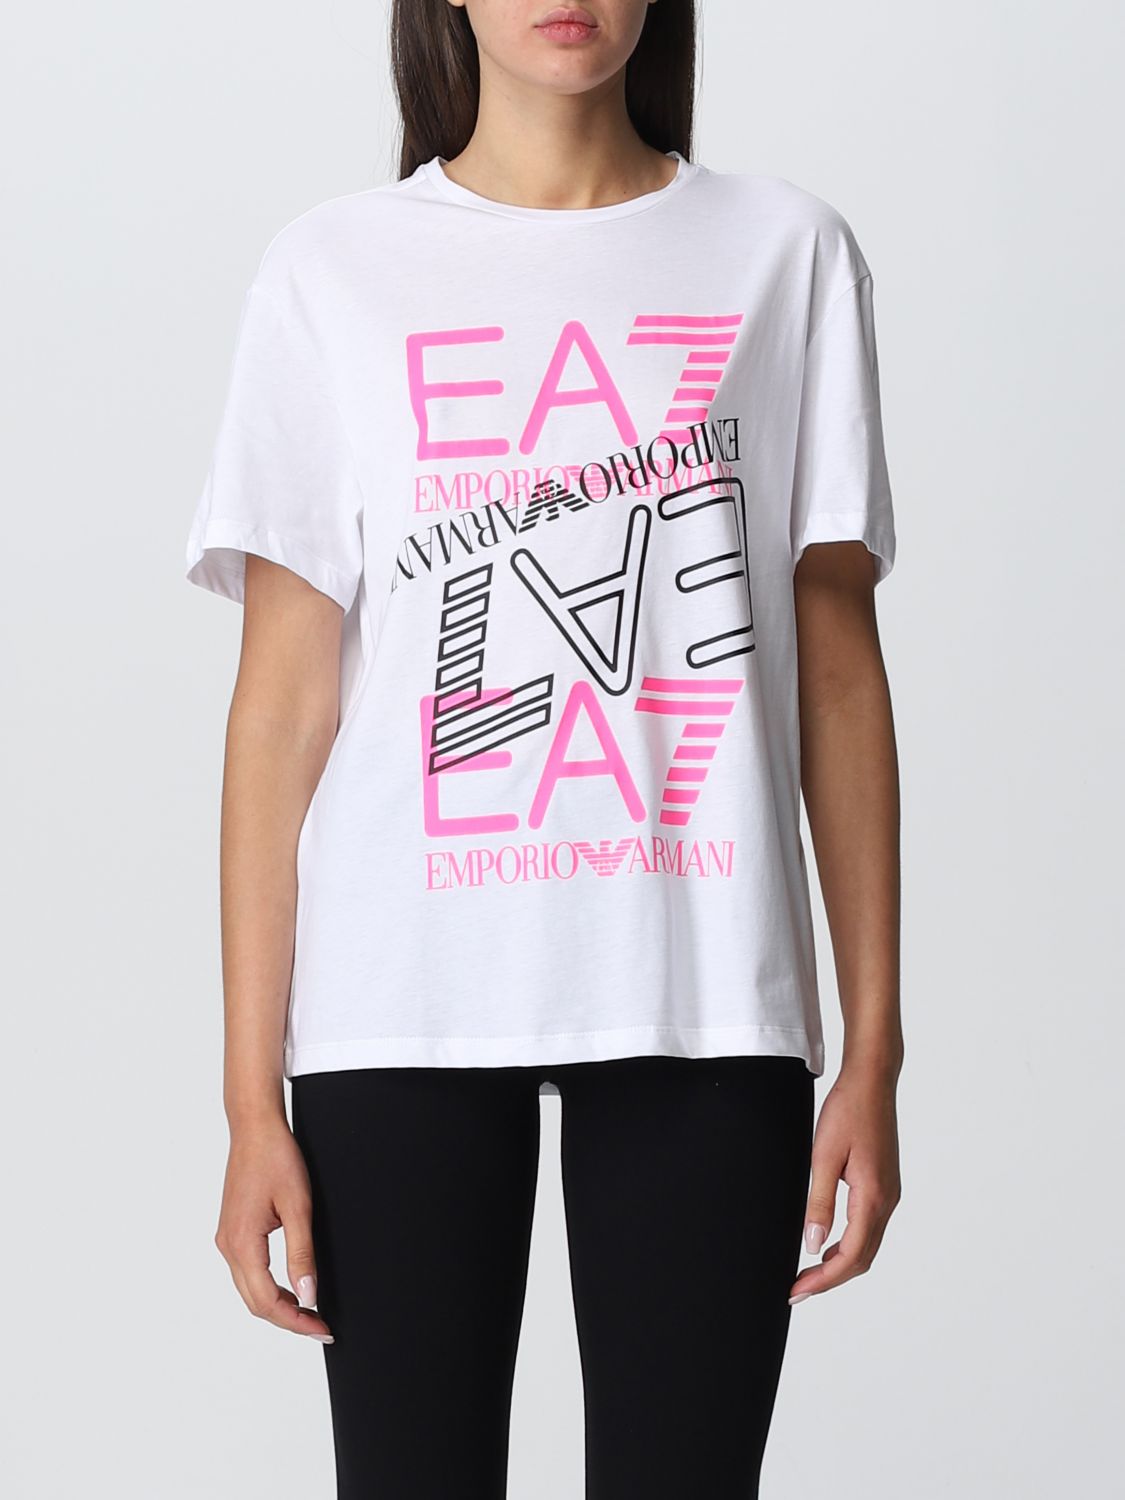 Ea7 T-shirt White  Woman